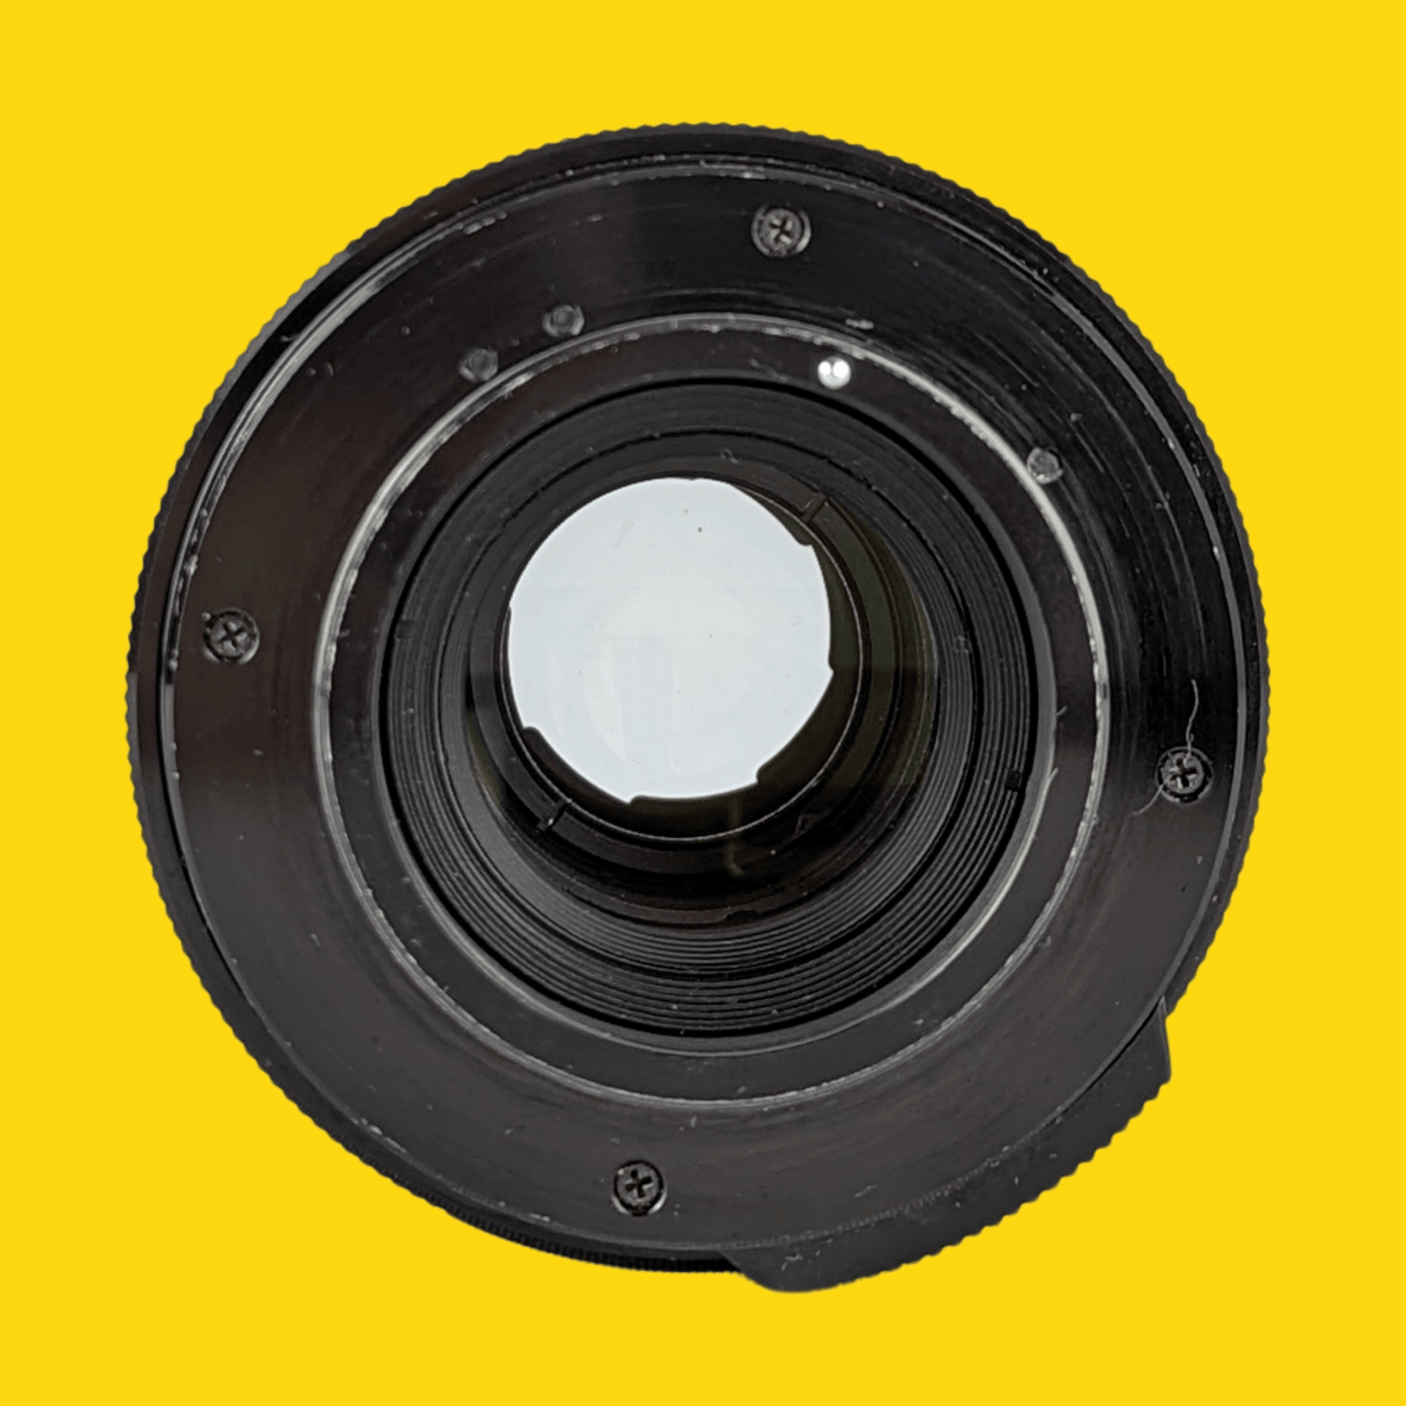 Prinzflex lens 70mm f/3.5 Camera Lens